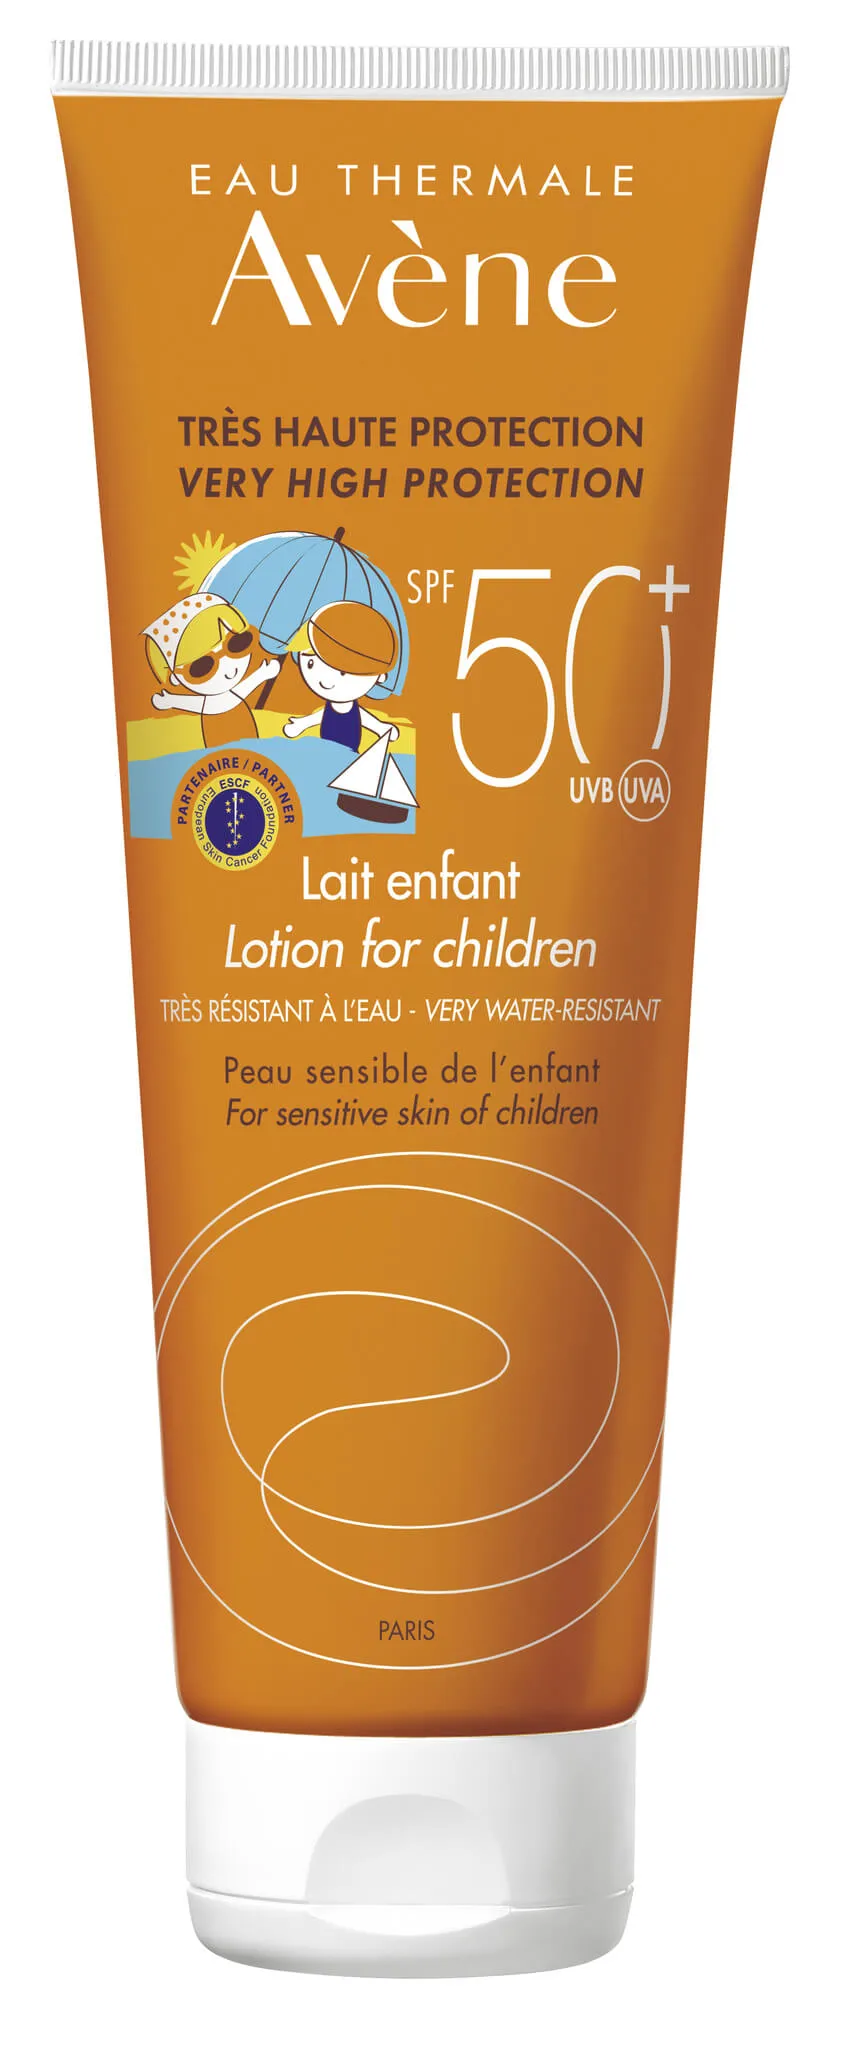 Avene Sun, mleczko dla dzieci, bardzo wysoka ochrona słoneczna, SPF 50+, 250 ml